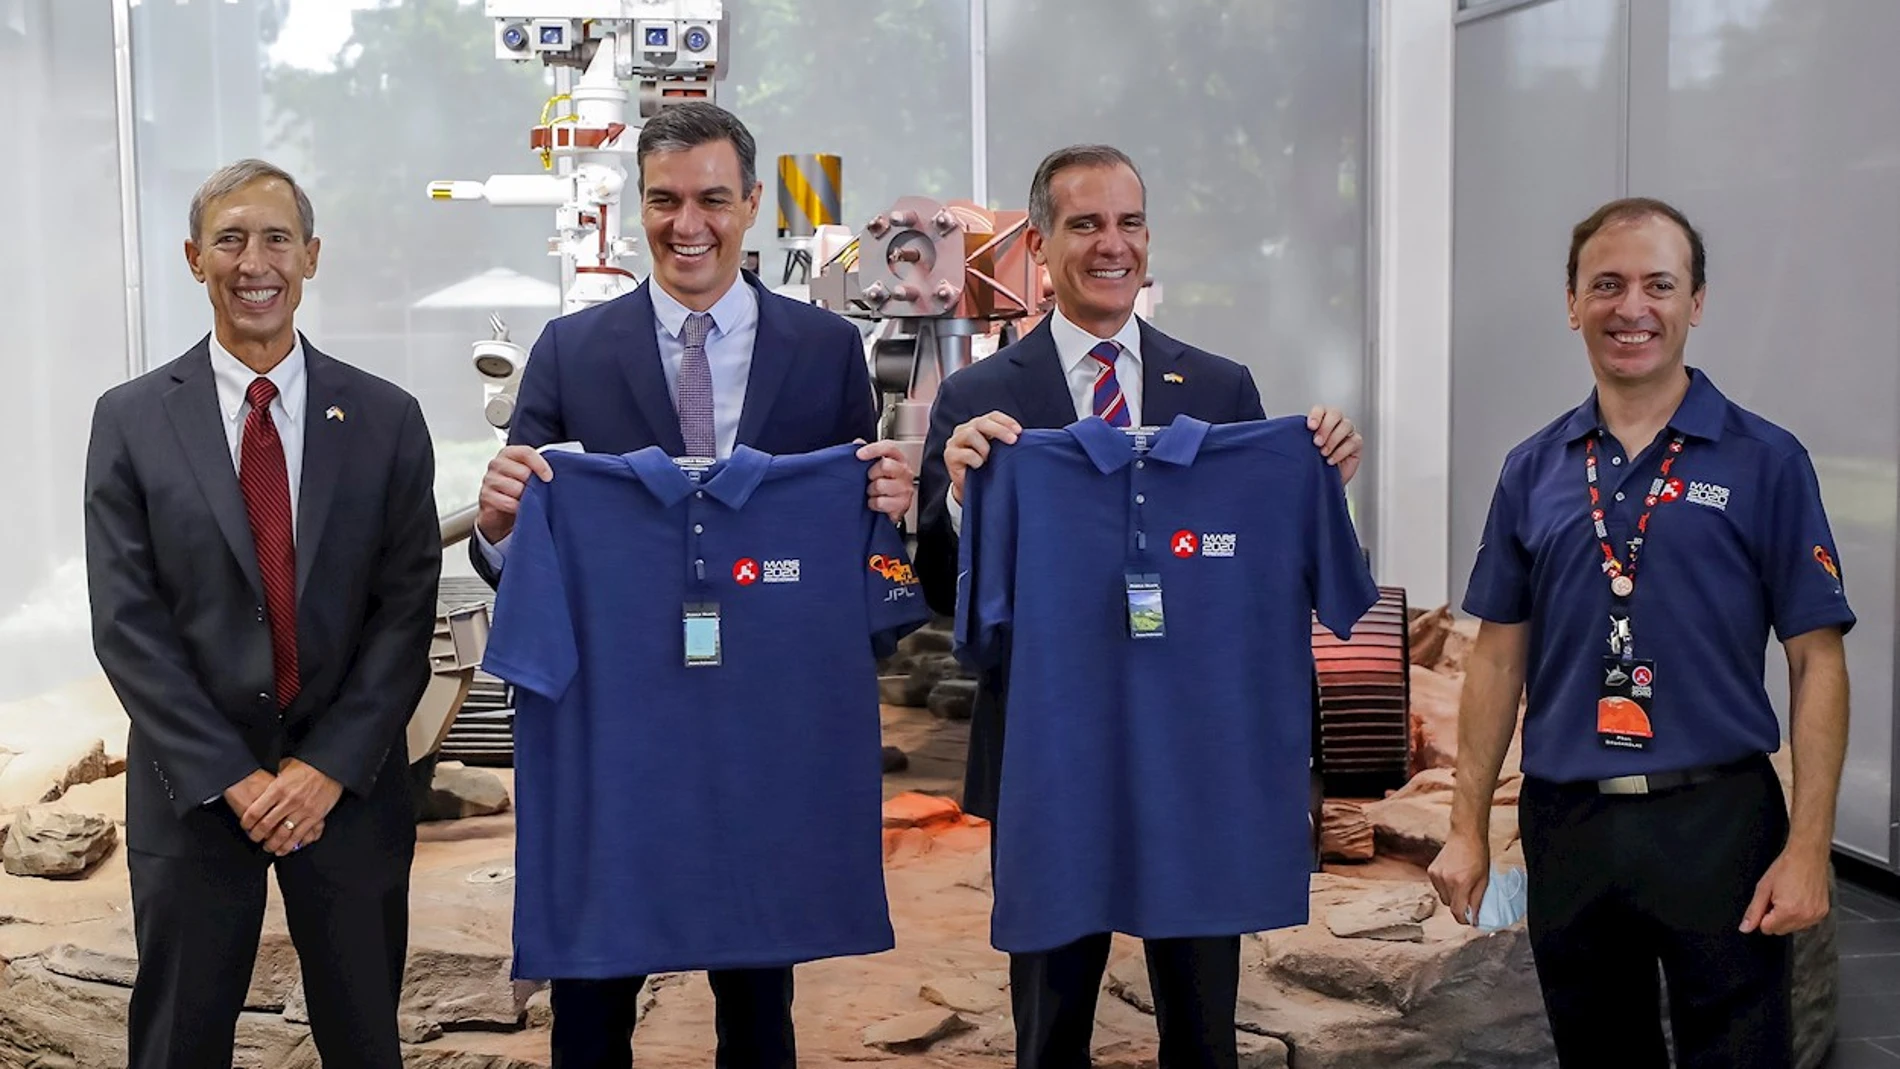 Pedro Sánchez y el alcalde de Los Ángeles, Eric Garcettitras recibir como regalo una camiseta con el logo de la misión Perseverance